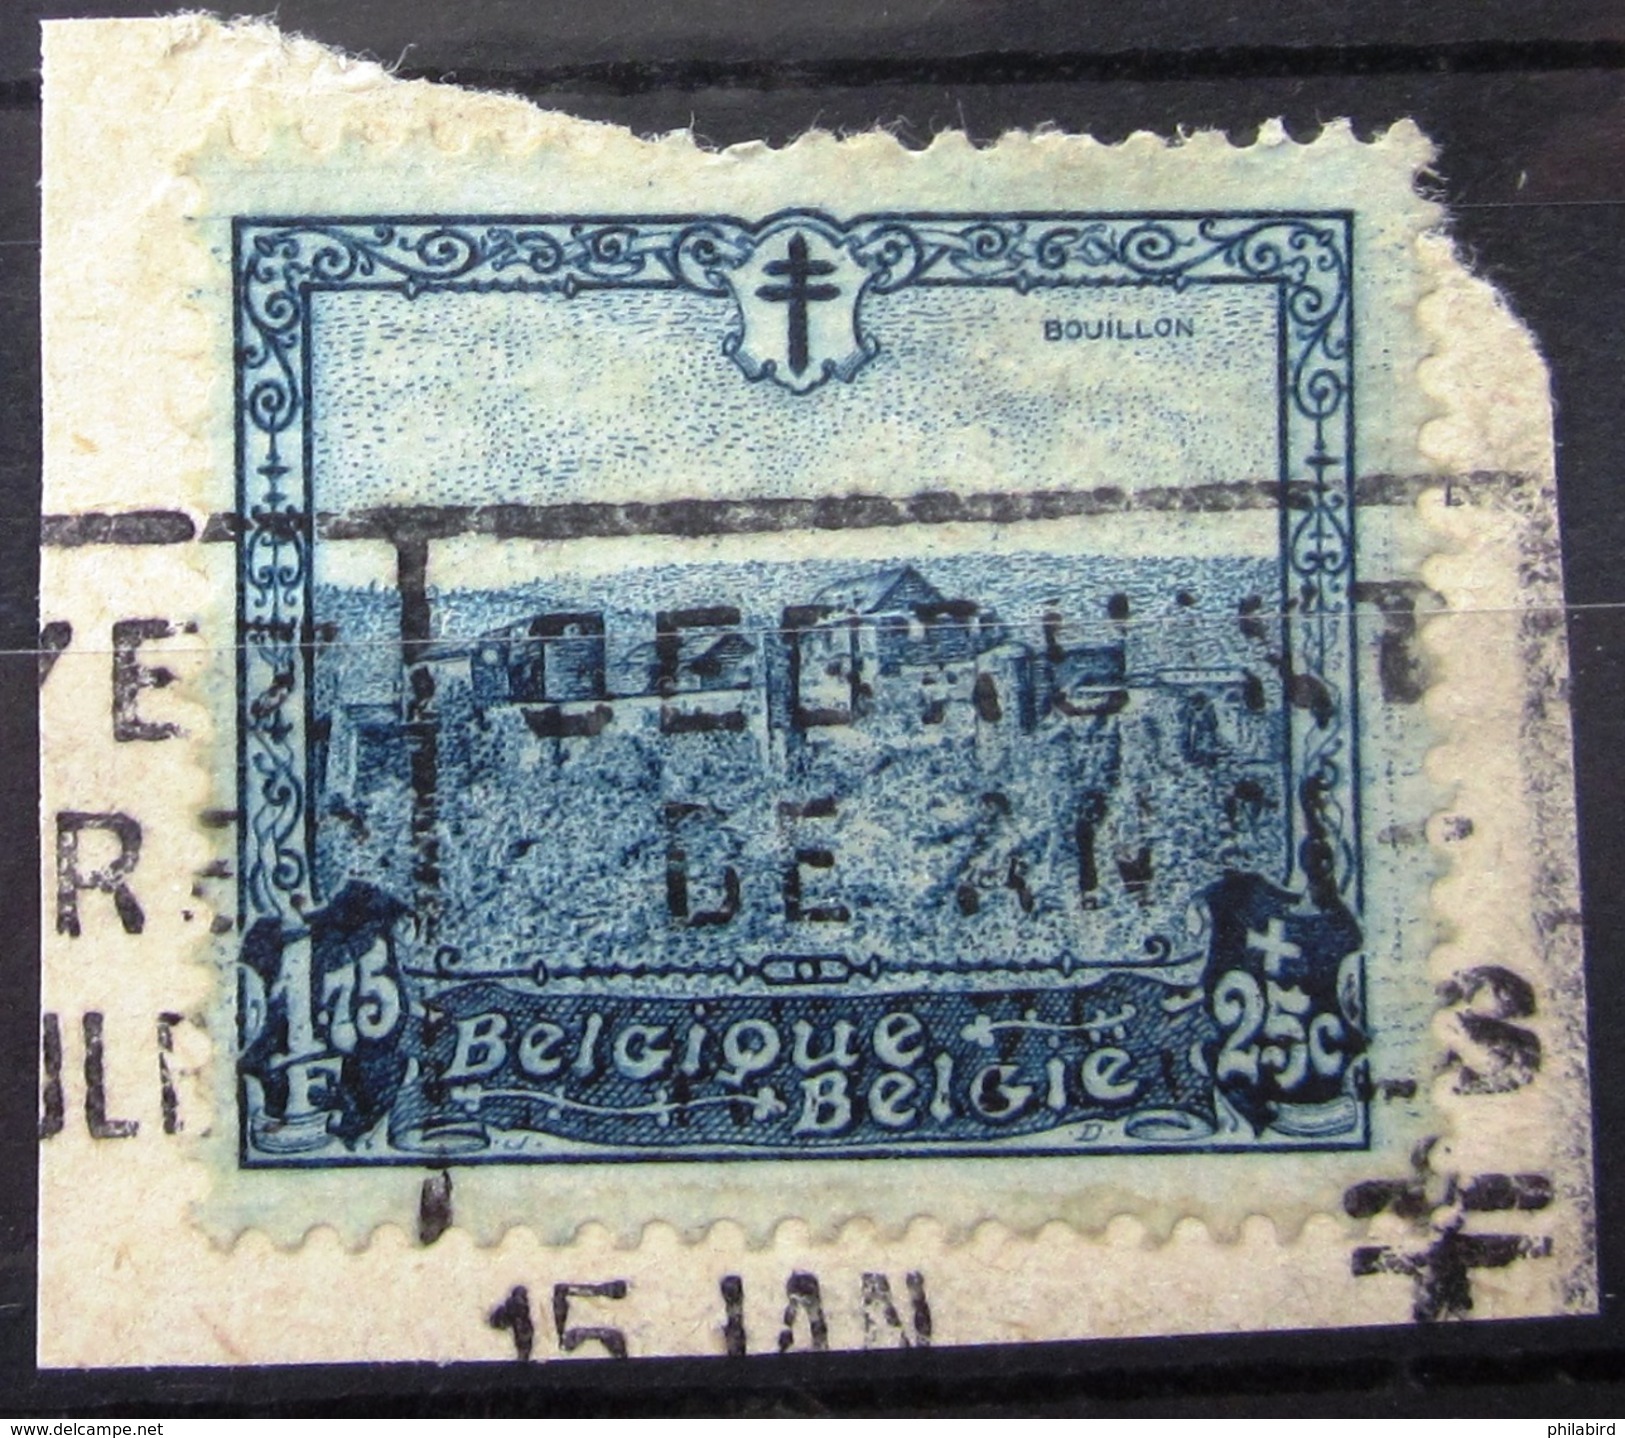 BELGIQUE                    N° 313                      OBLITERE - Used Stamps